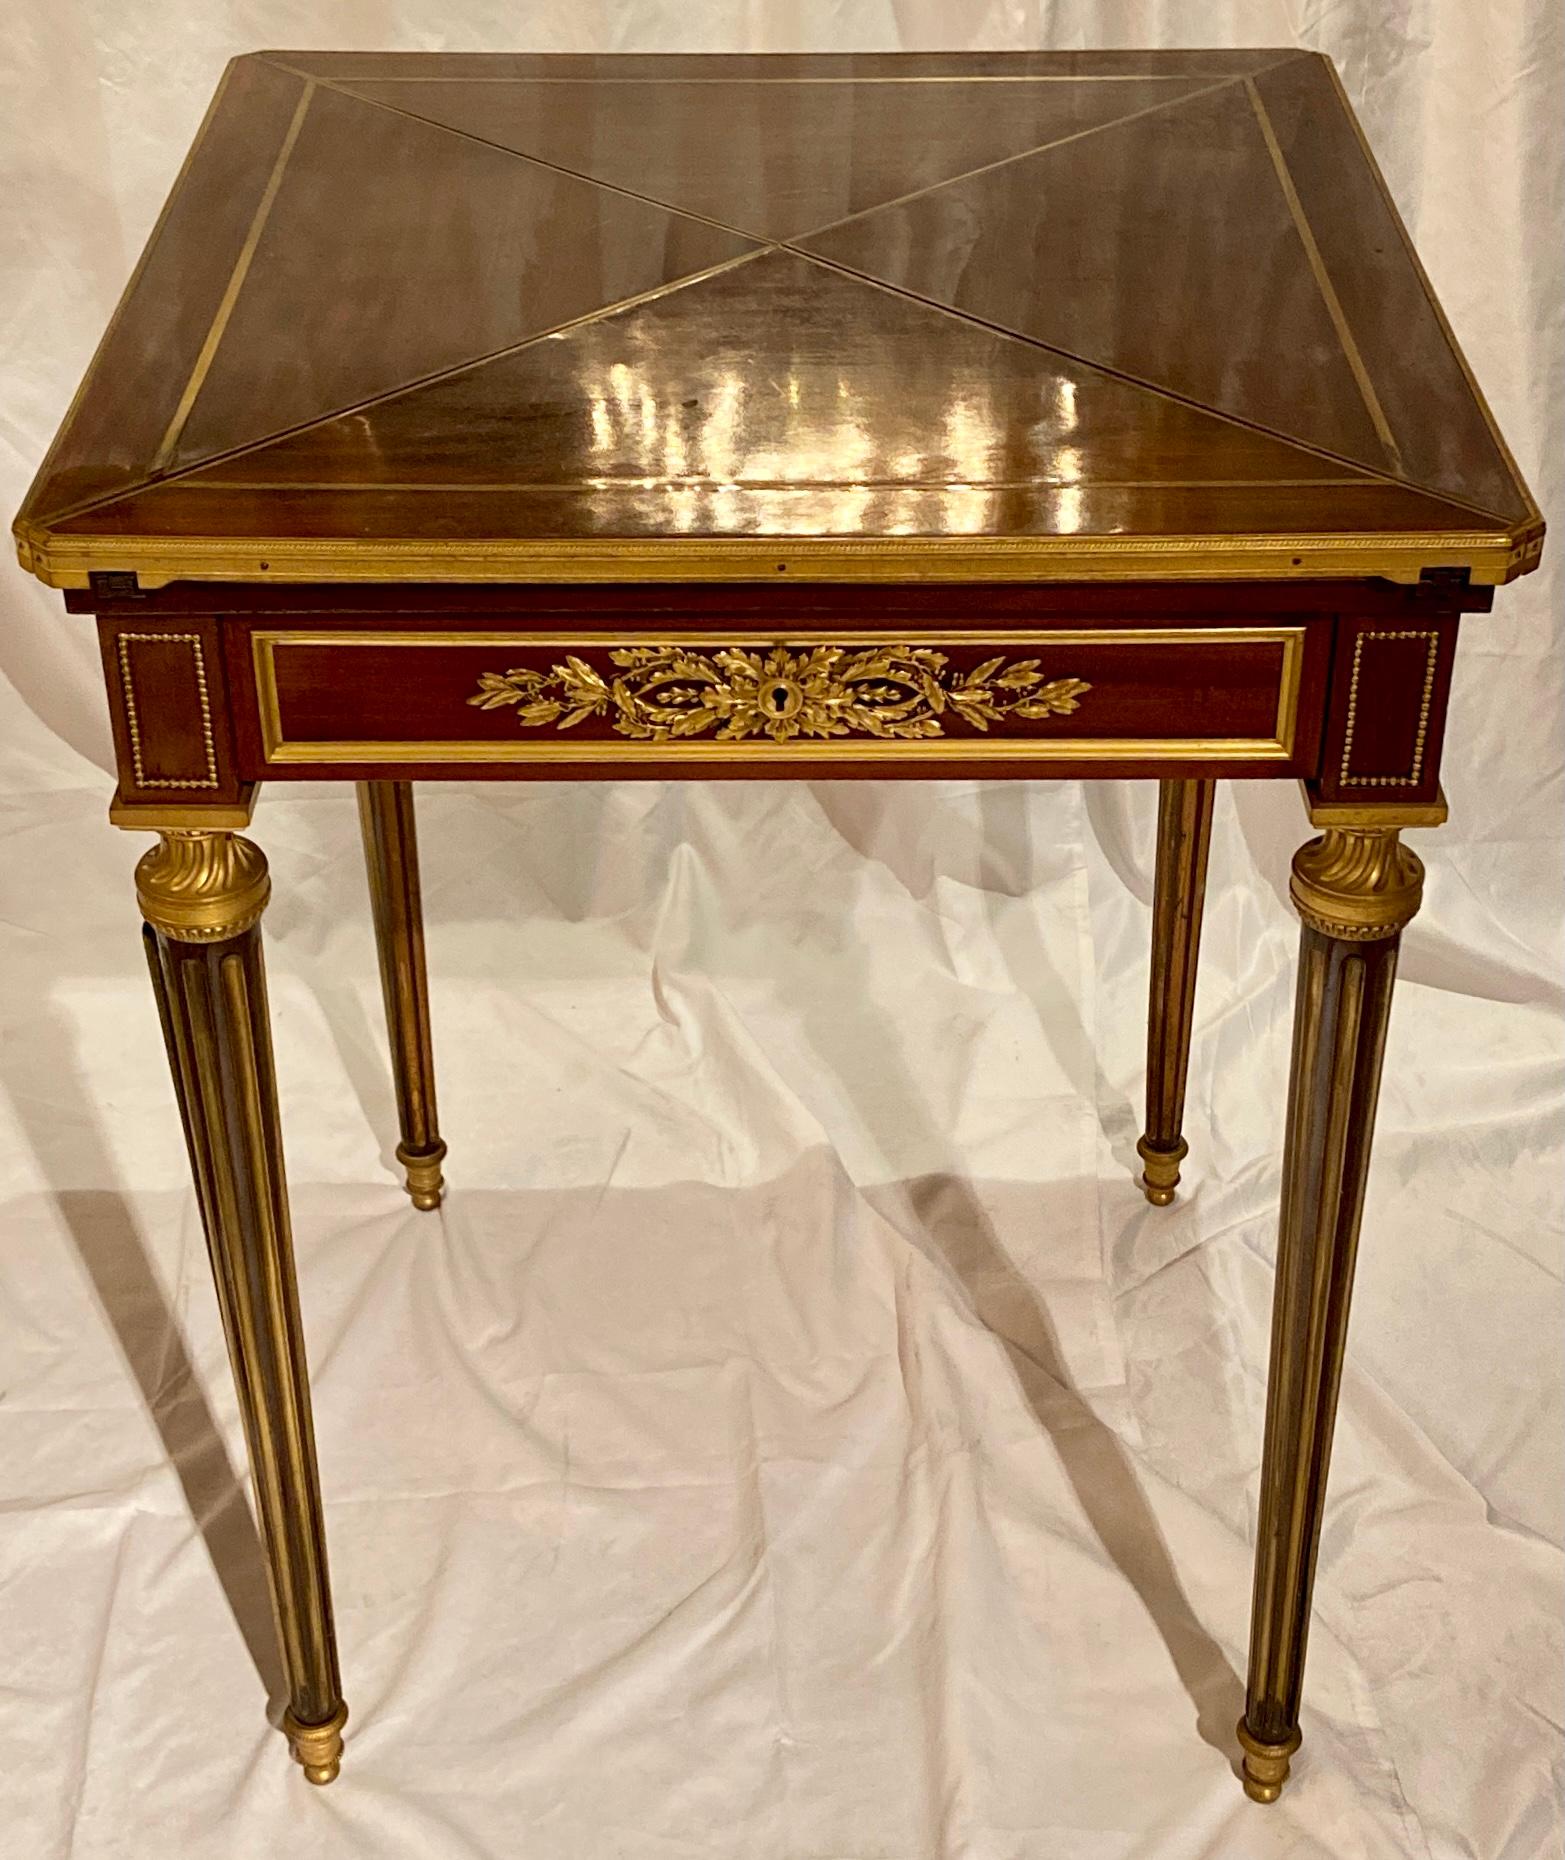 Ancienne table à cartes à mouchoirs en acajou et bronze doré, signée par l'ébéniste Paul Sormani, vers 1870.
carré de 23